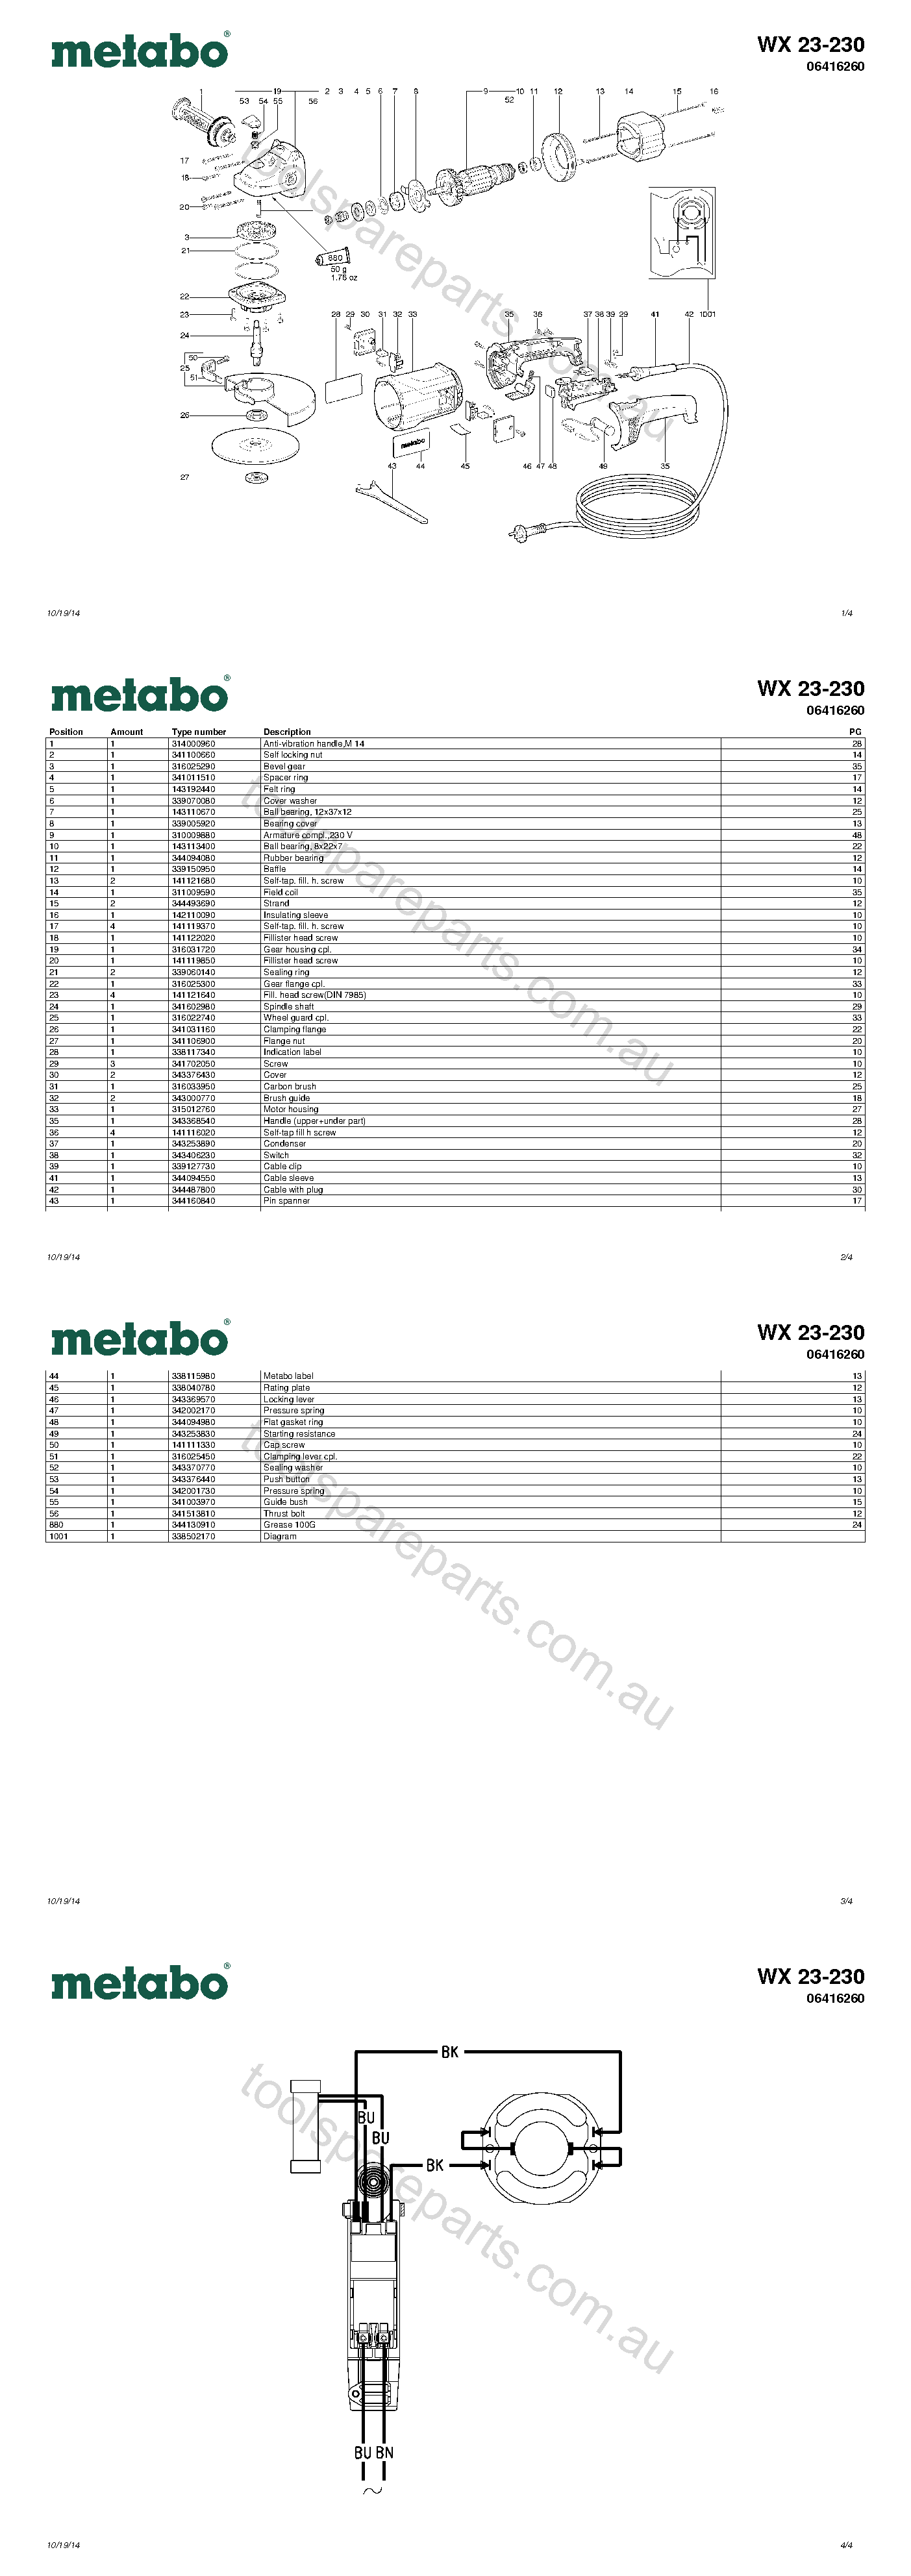 Metabo WX 23-230 06416260  Diagram 1